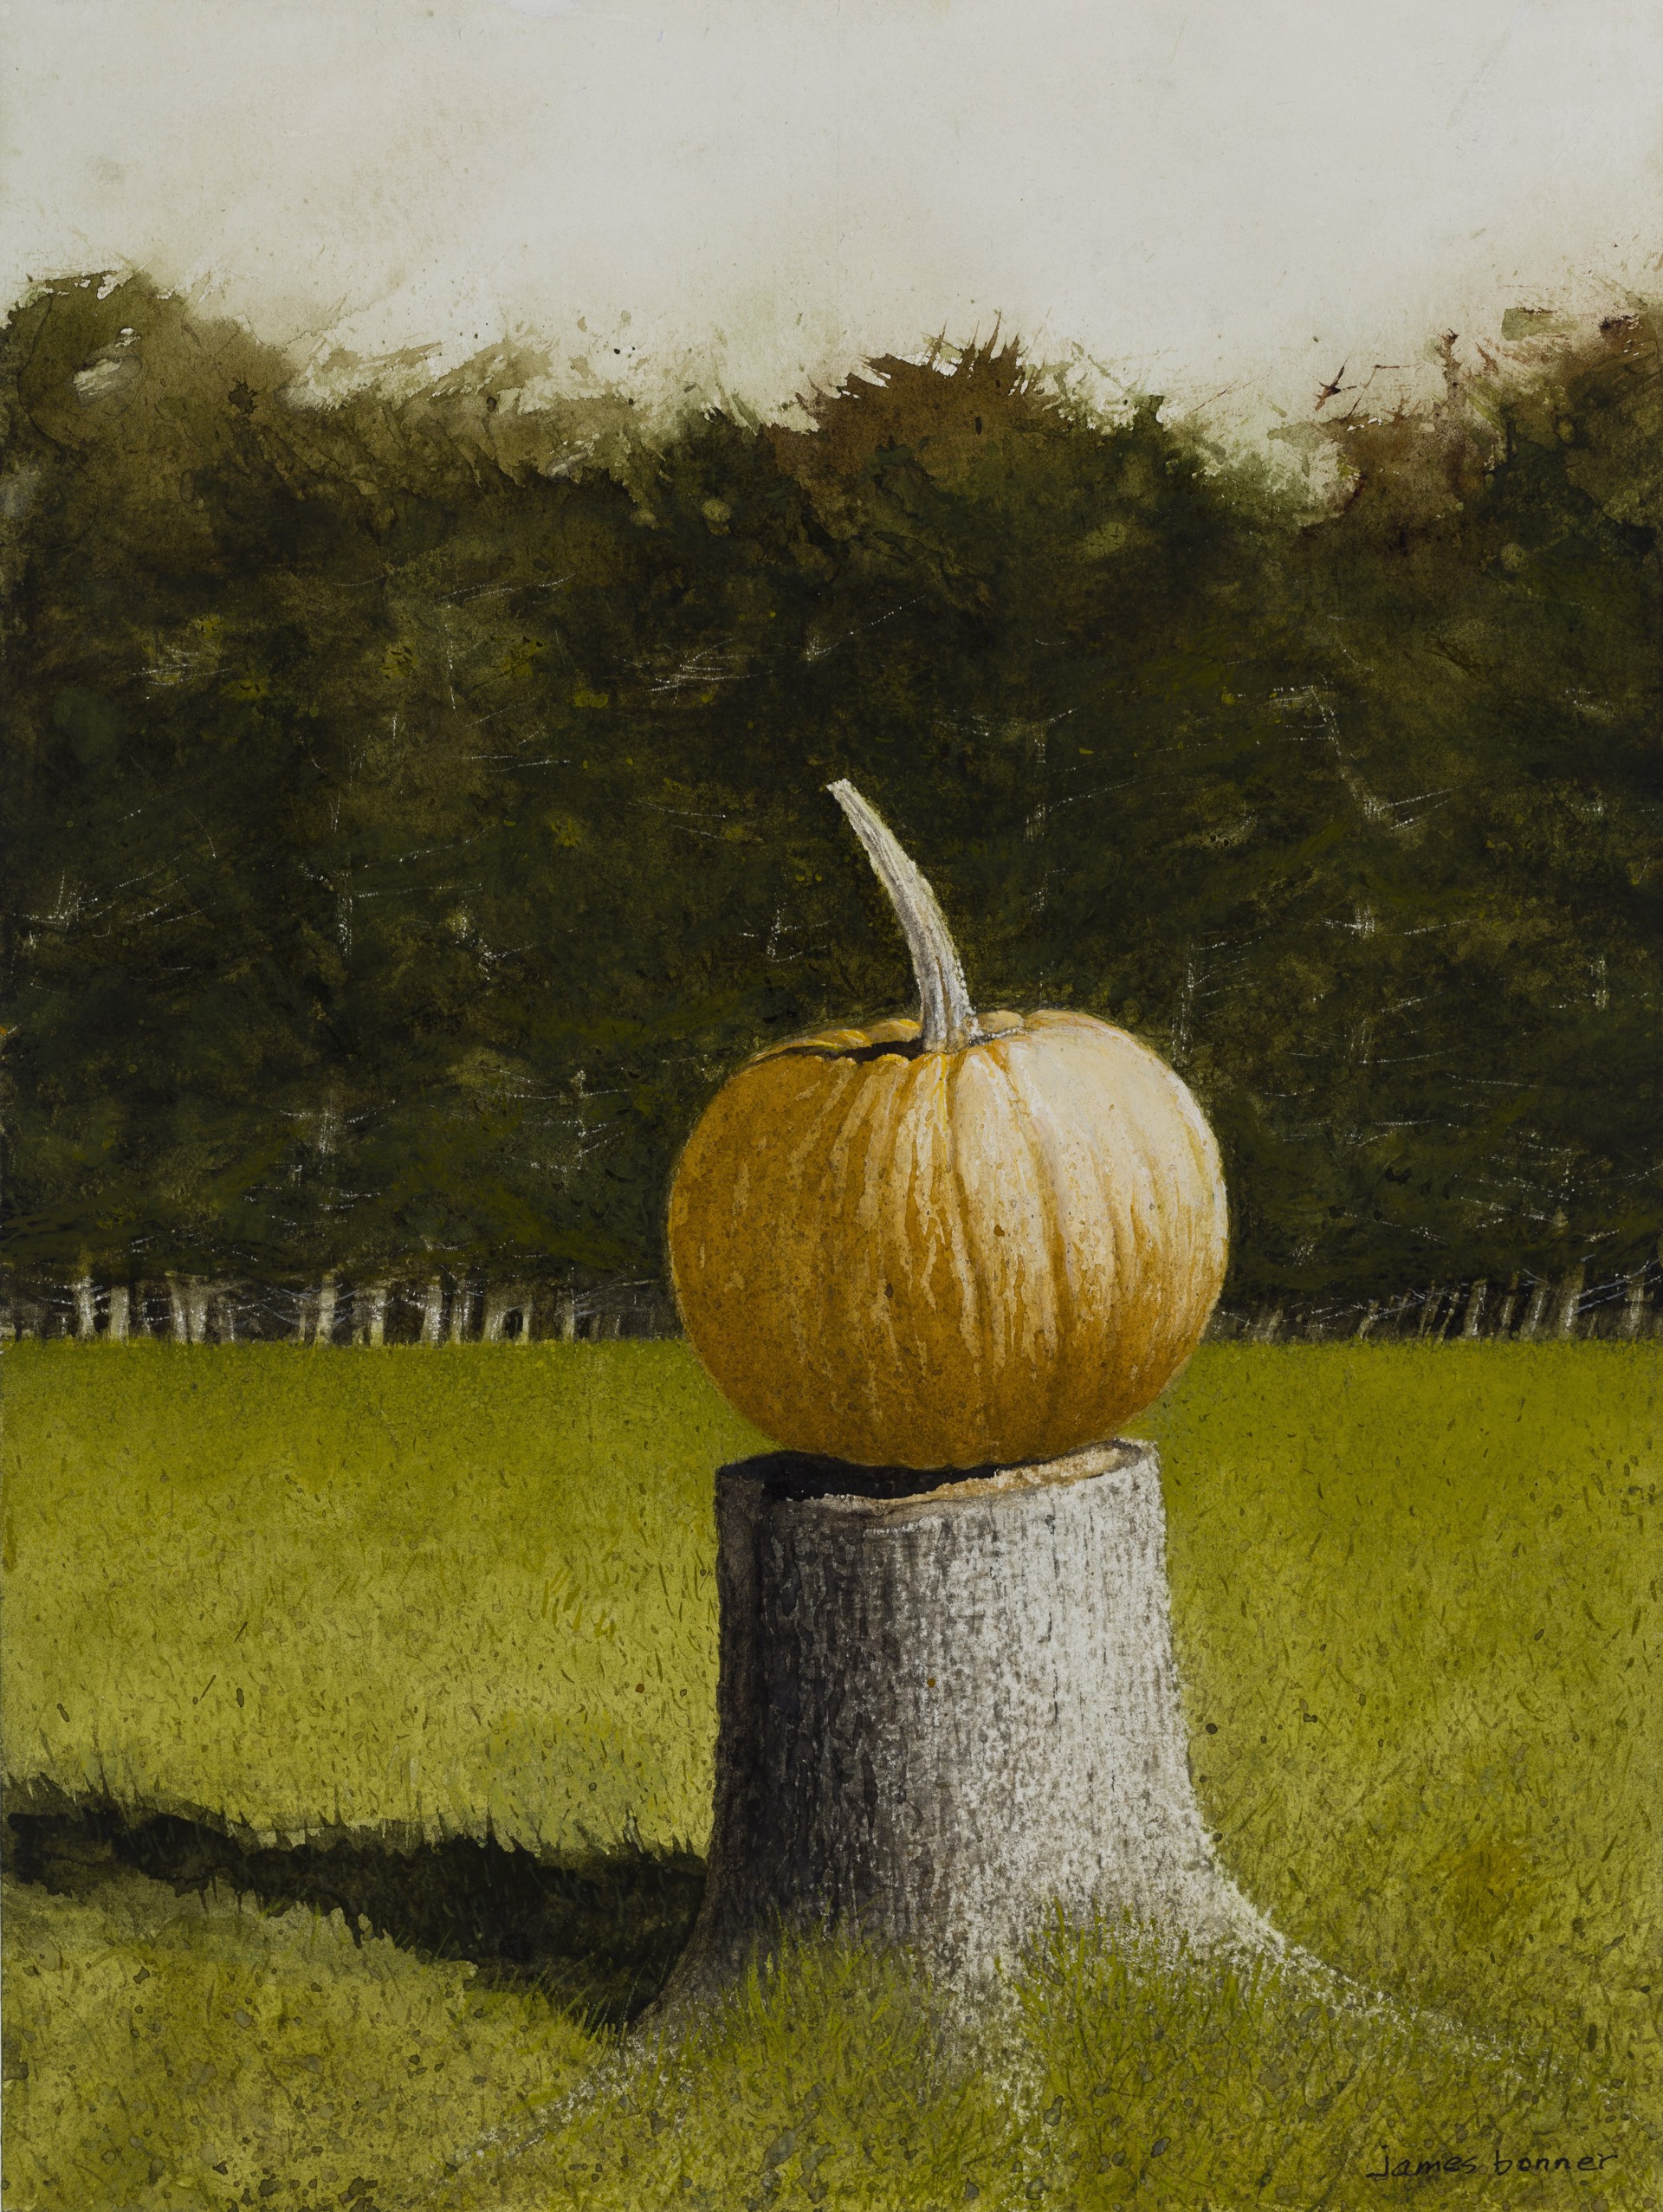 Pumpkin Stump by James Bonner